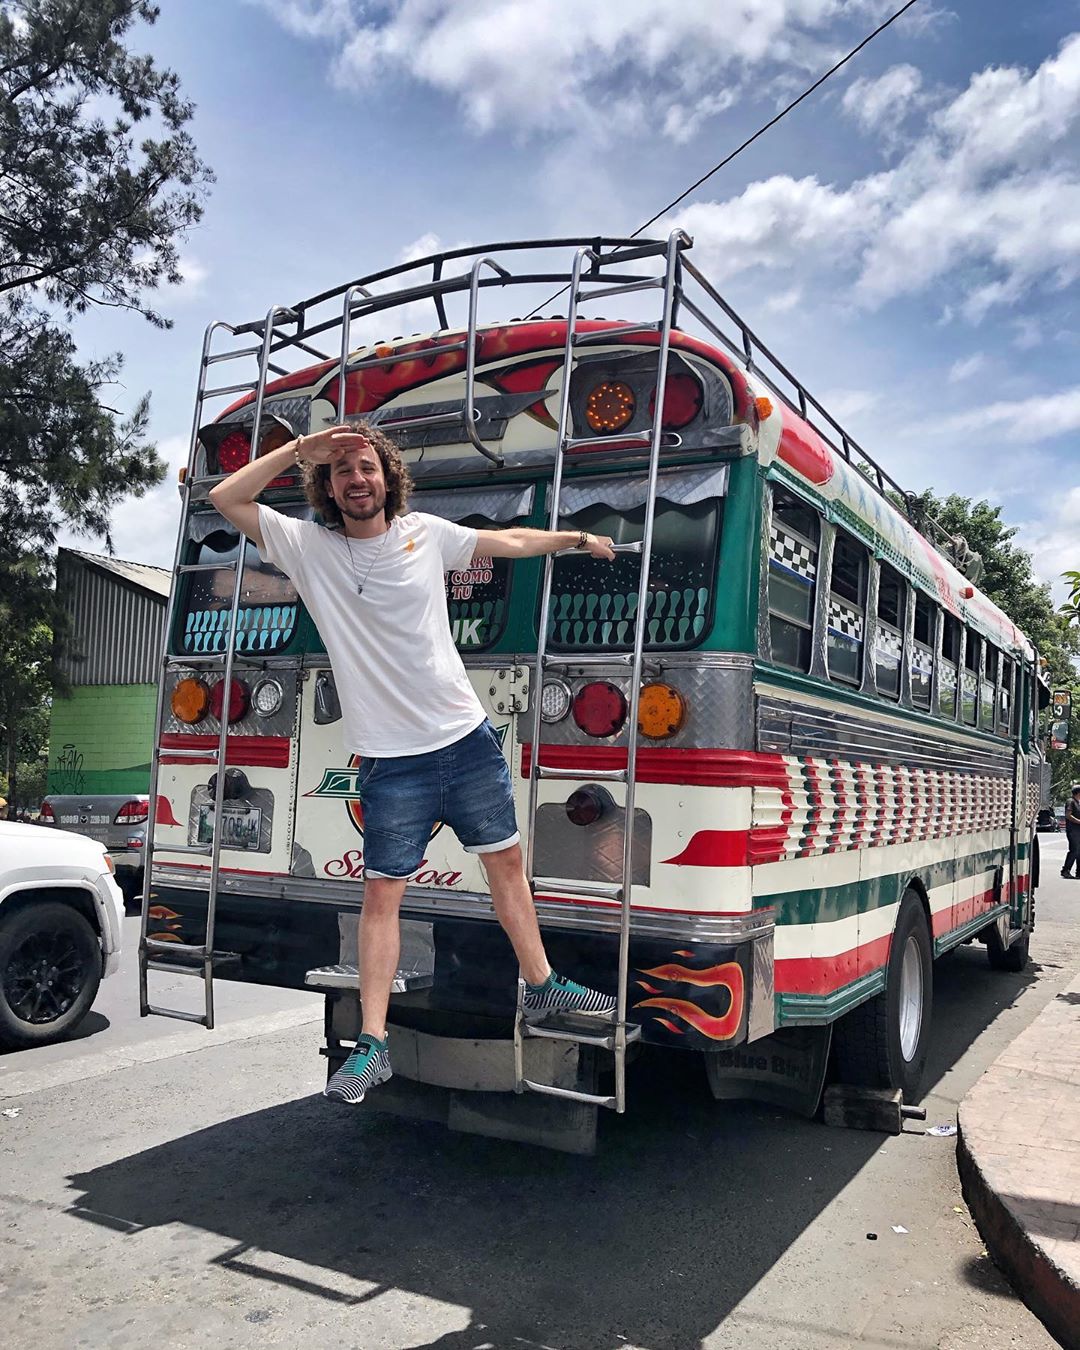 Los autobuses o “burras” en Guatemala son toda una cultura. Los conductores ador...